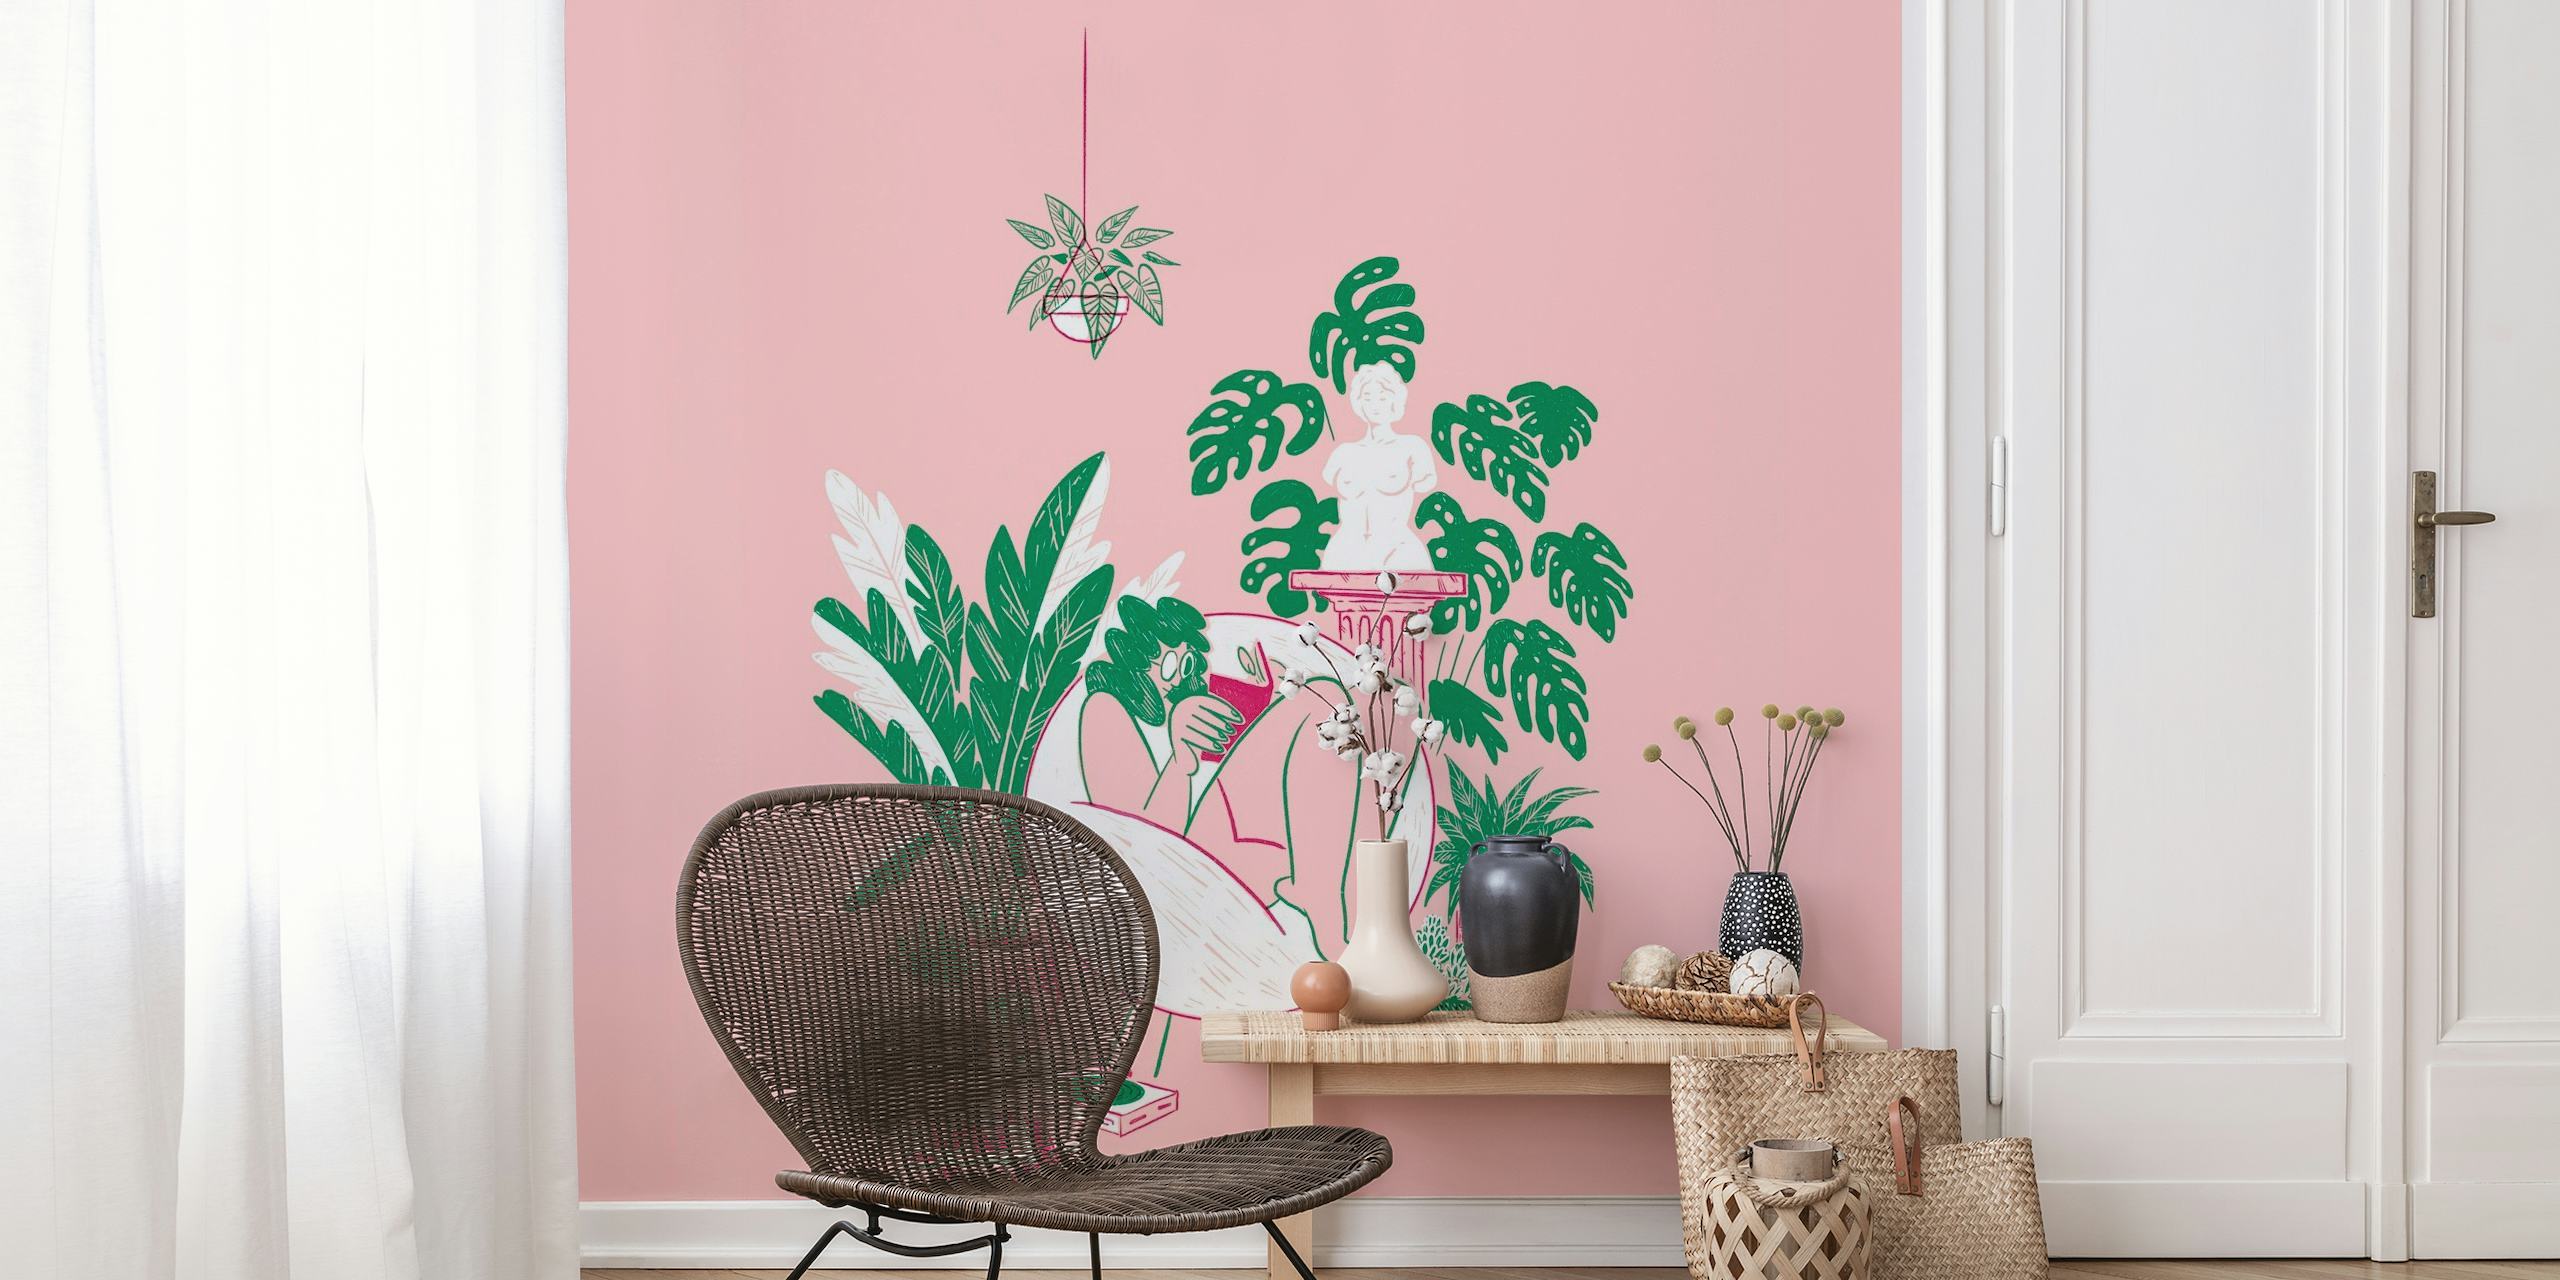 Illustrazione di una persona circondata da piante in vaso su sfondo rosa, che cattura una scena tranquilla di un giardino interno.